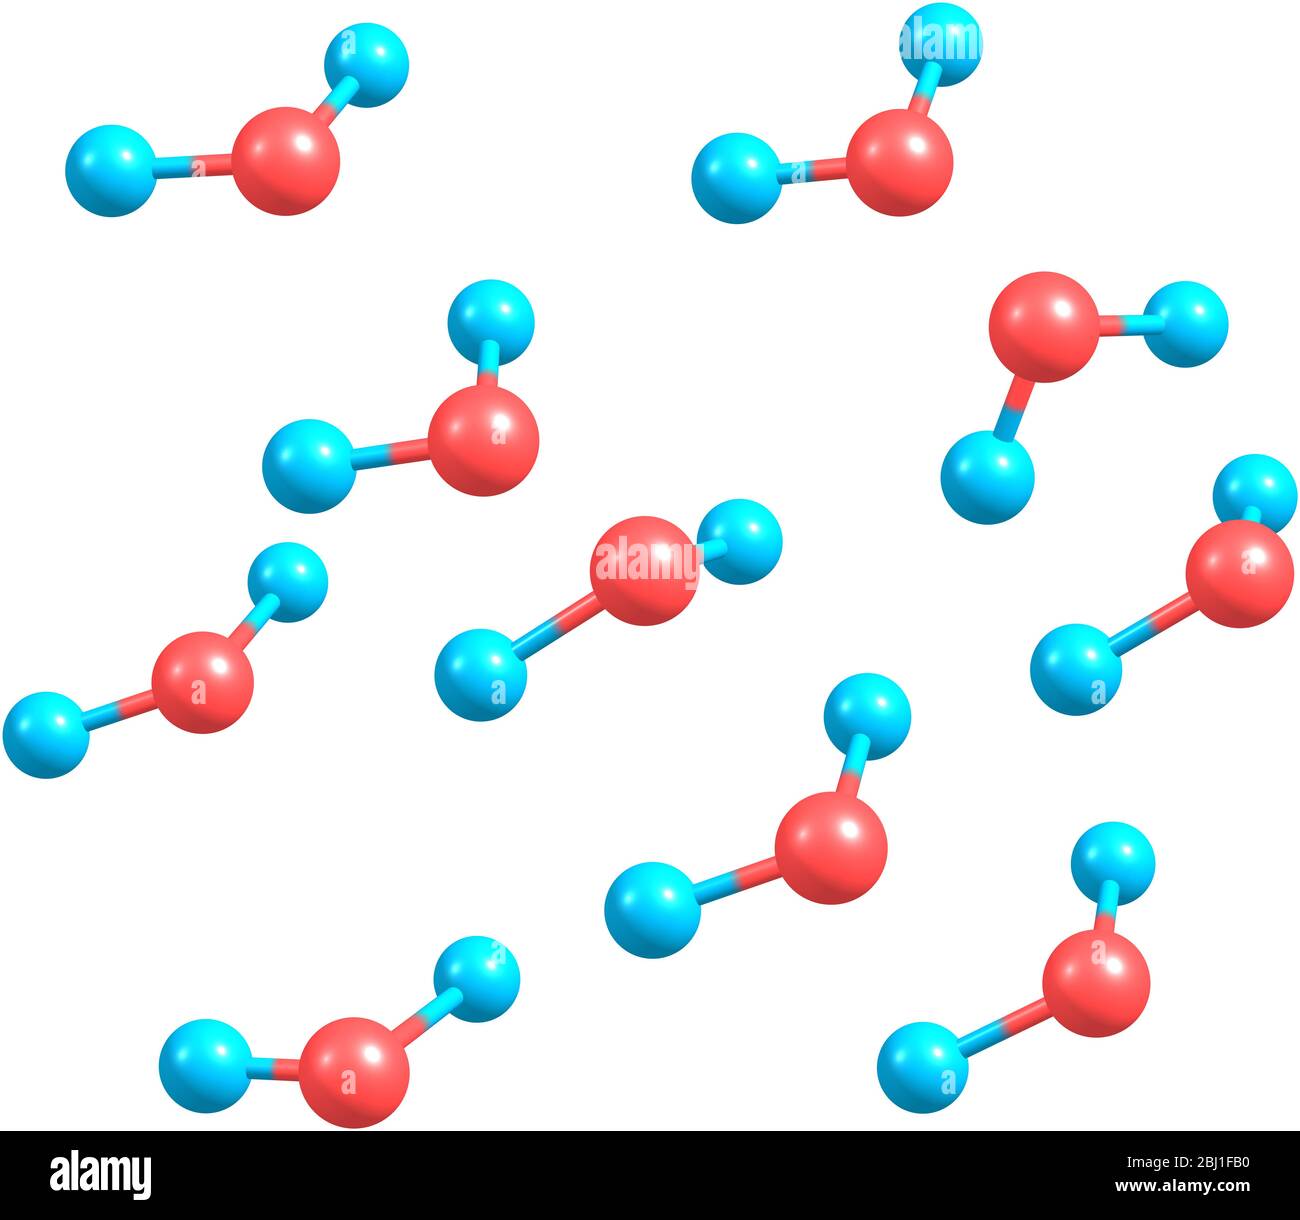 Ten Water Molecules on White Stock Photo